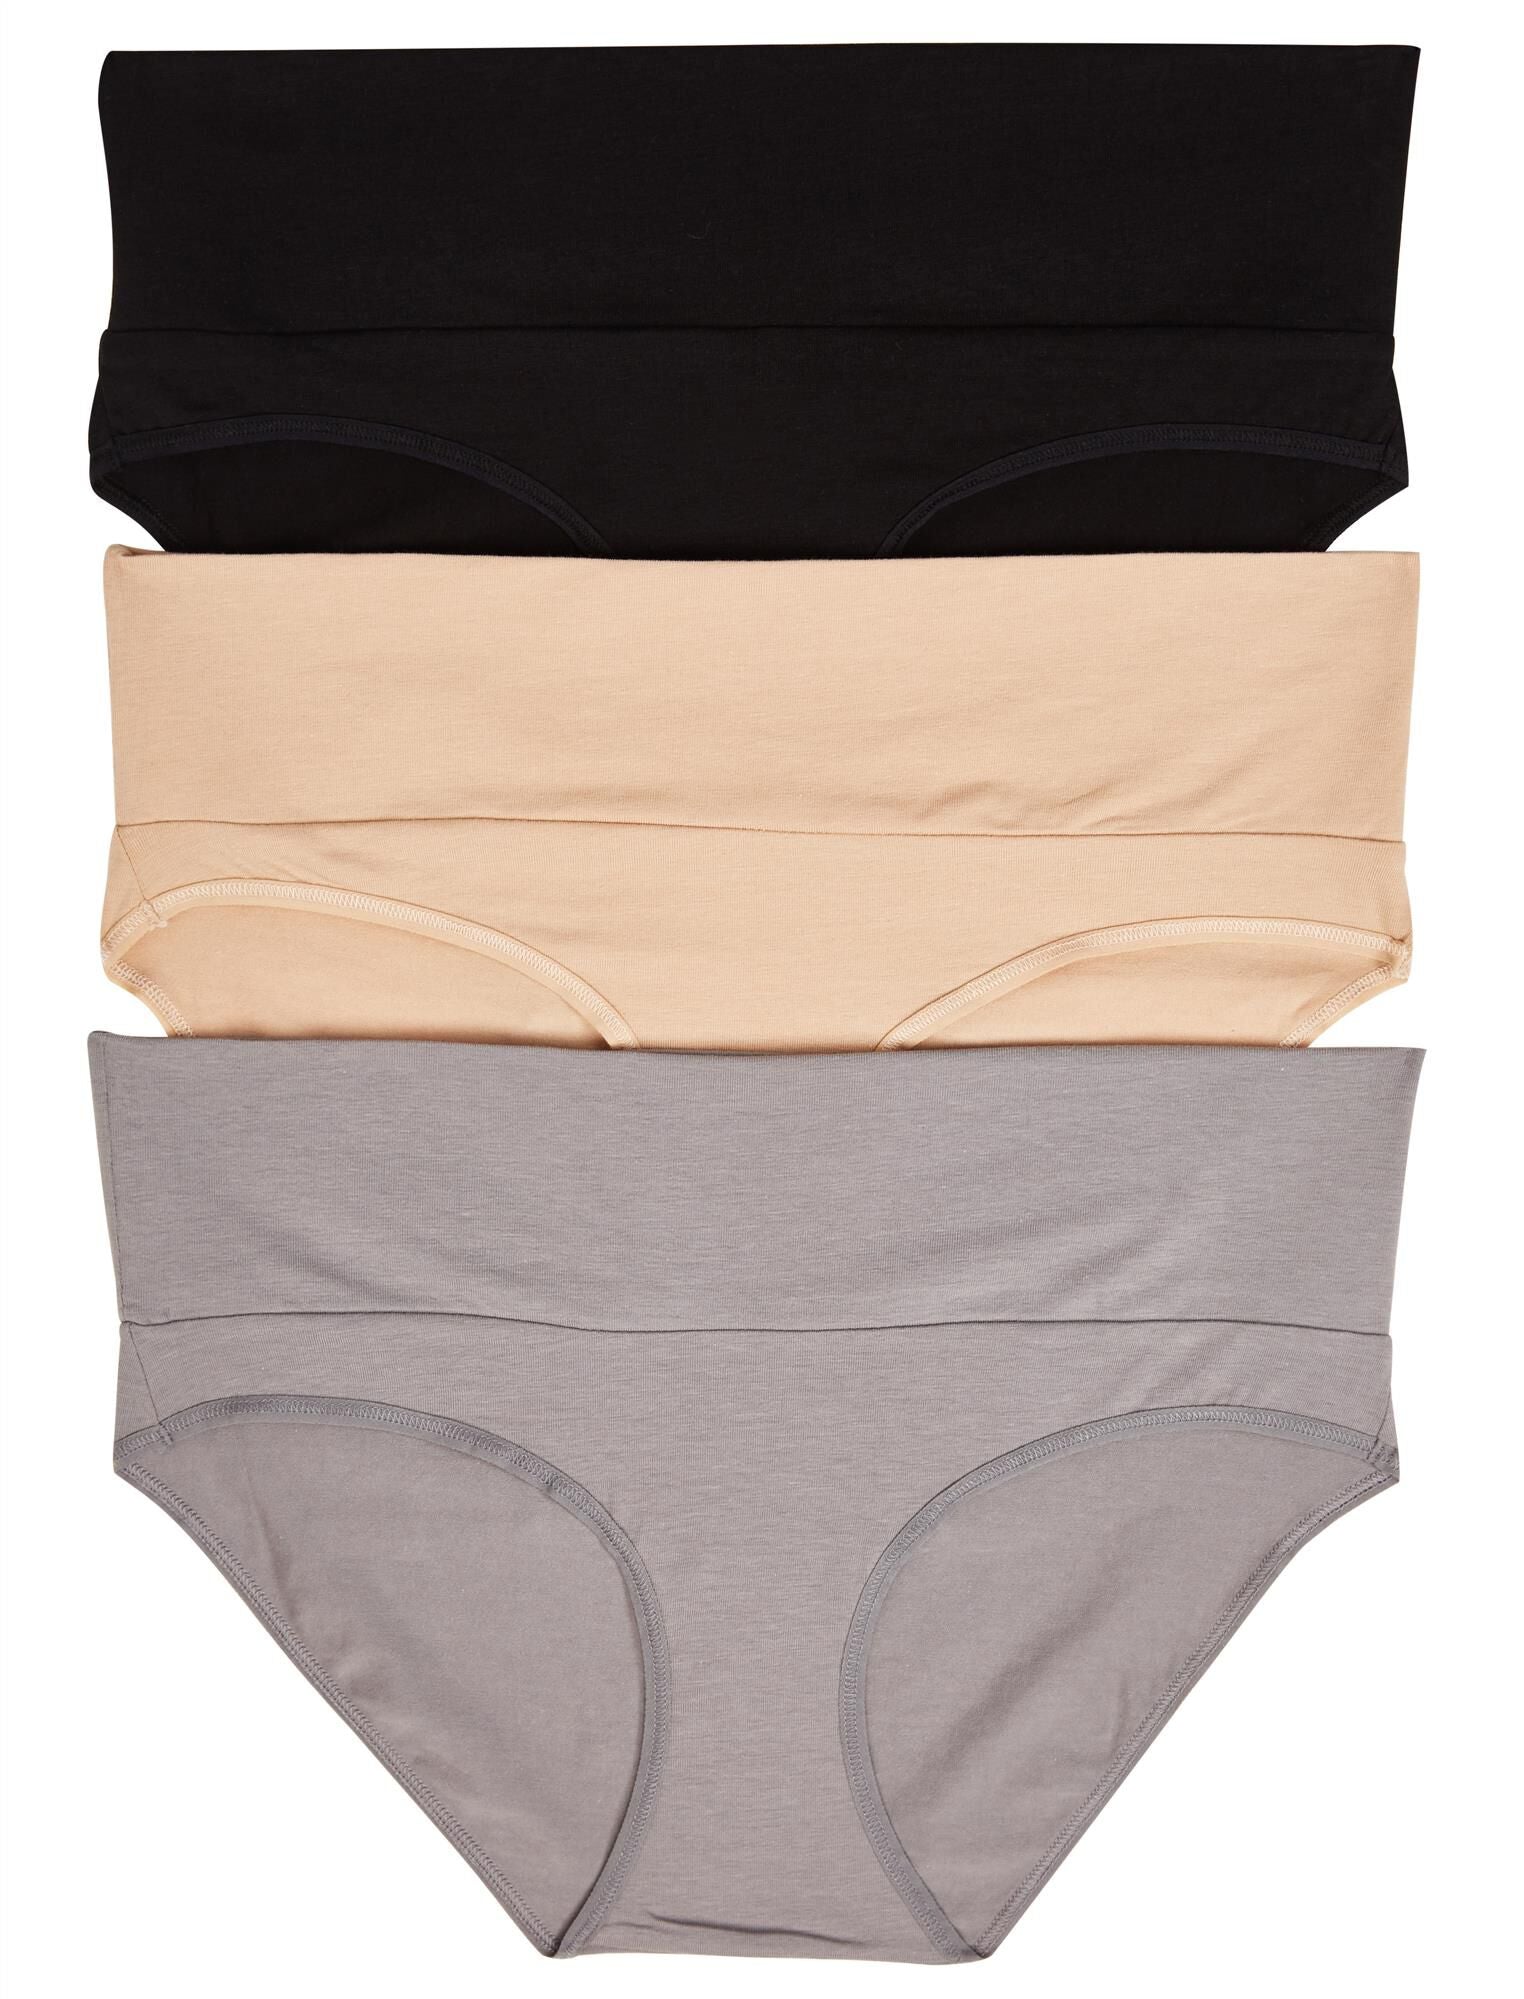 3pcs Women's Pregnant Nursing Panties, Cotton Breathable Plus Size Low  Waist Underwear